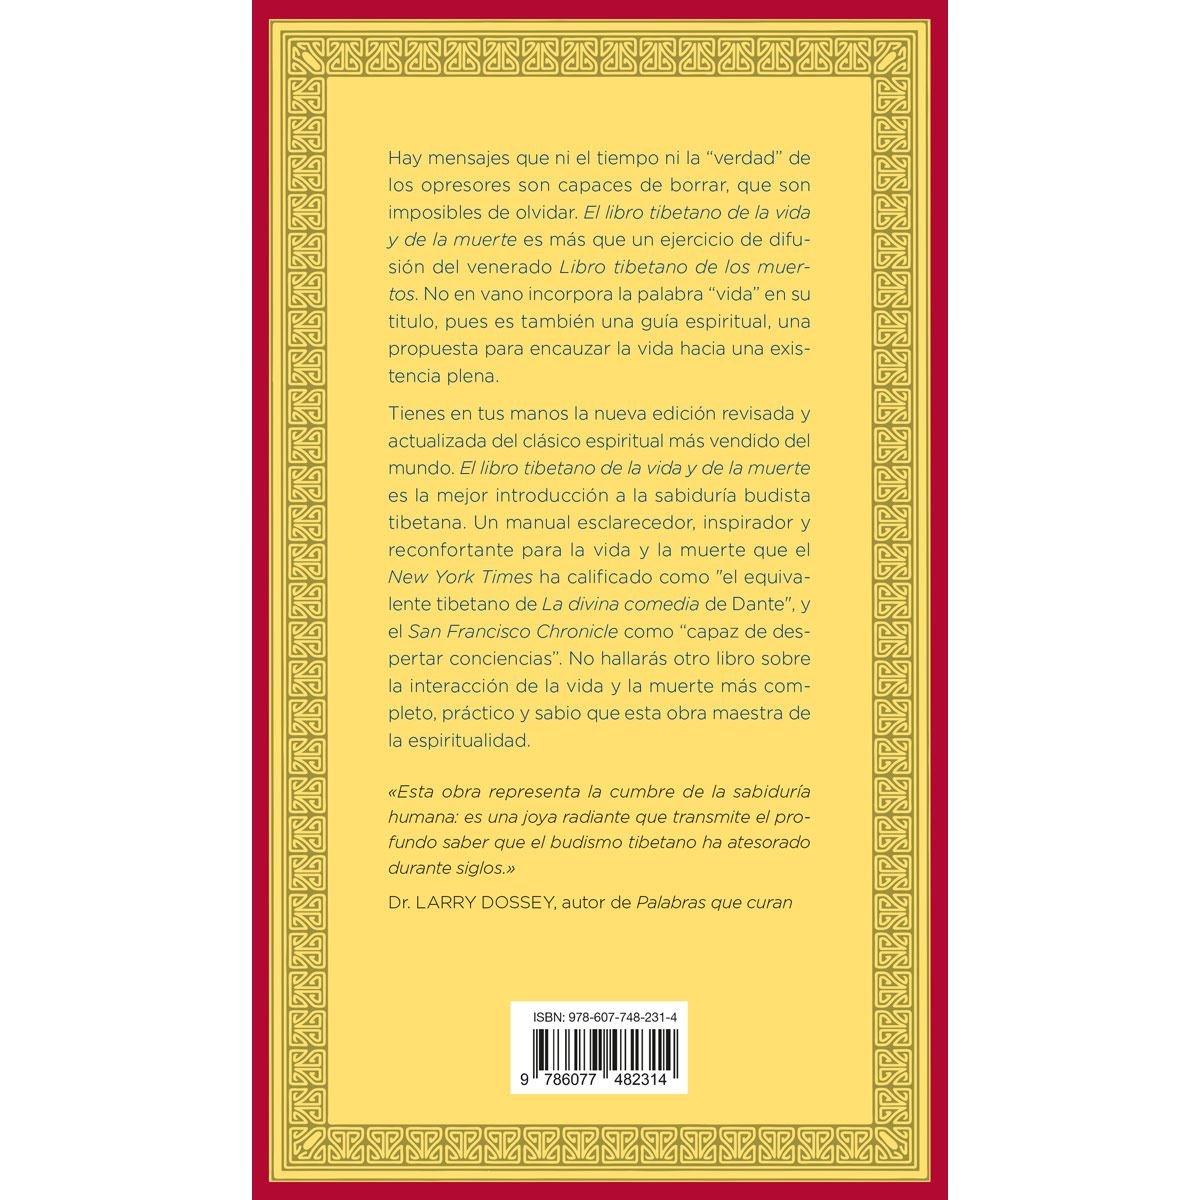 Sobre 'El libro tibetano de la vida y de la muerte' o contra el budismo 